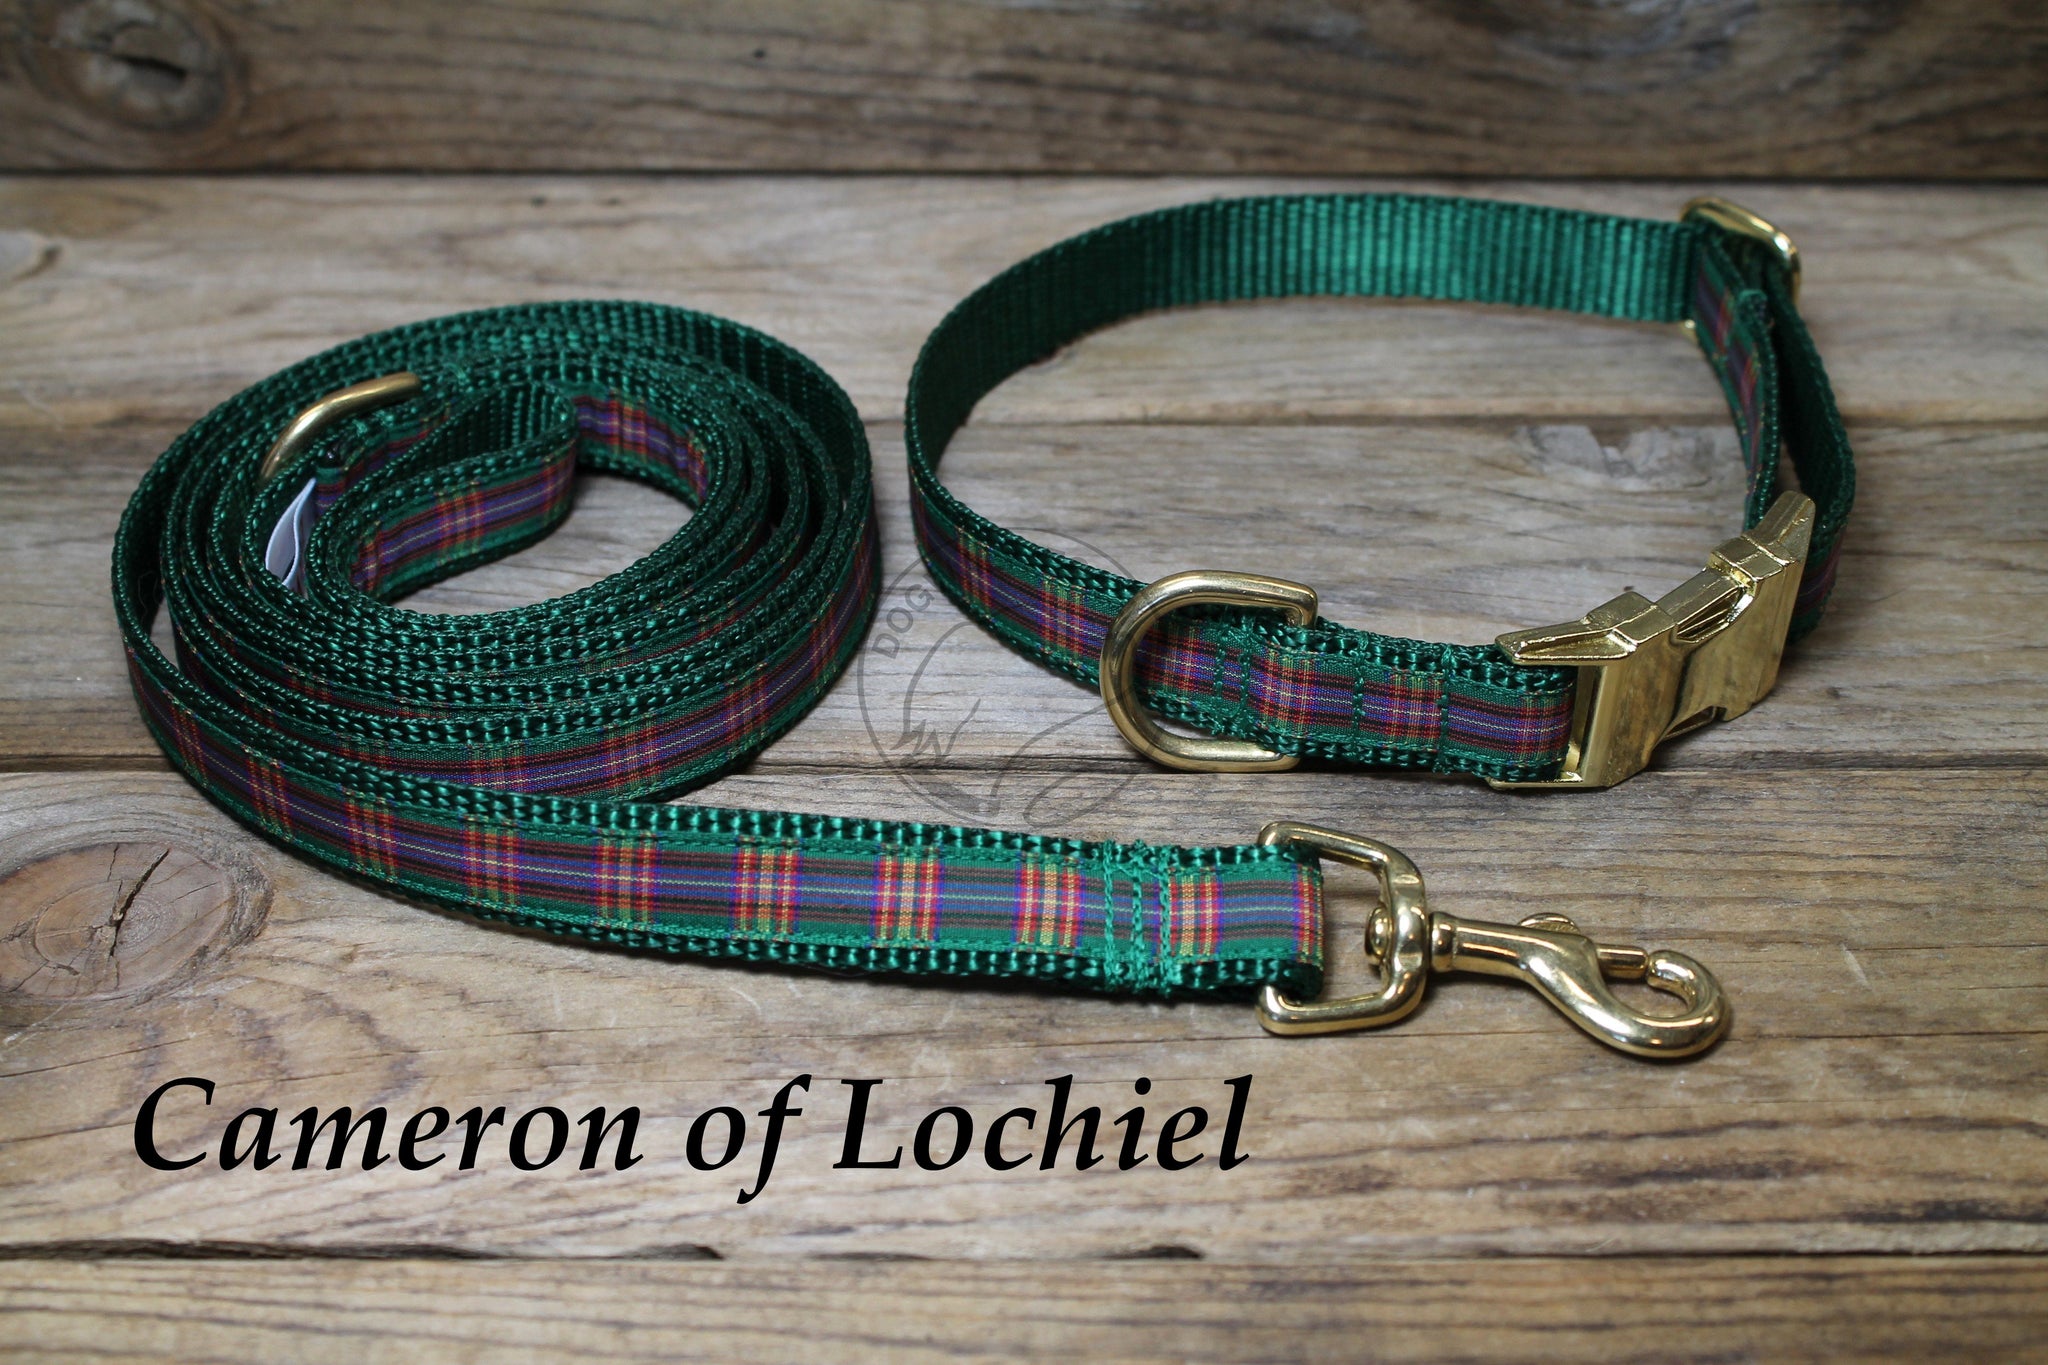 Tartan Dog Leash - Cameron of Lochiel Clan Tartan